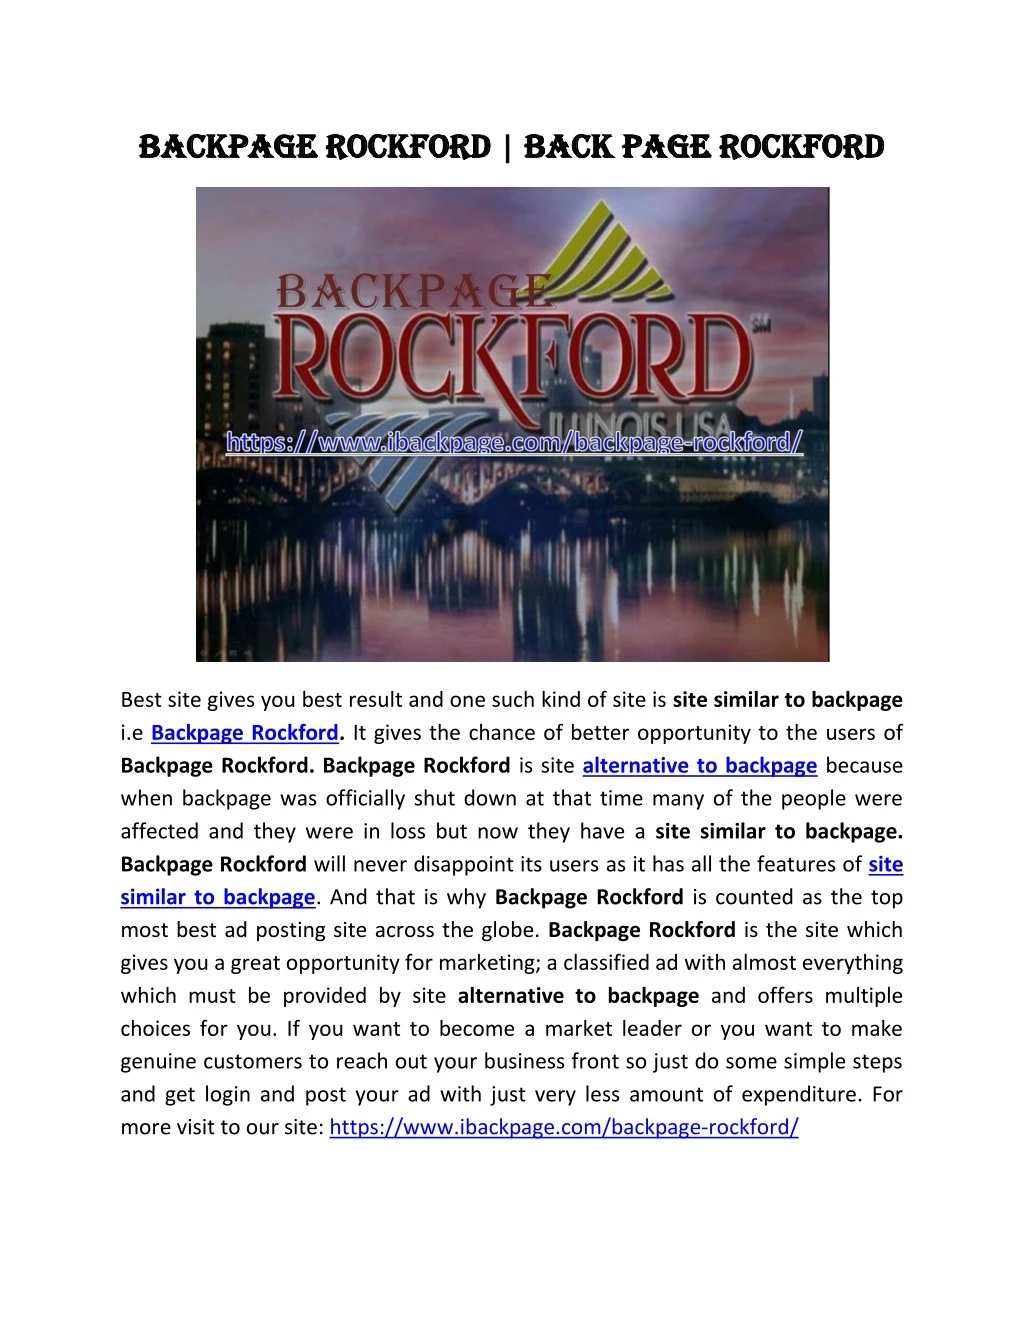 backpage rockford backpage rockford back page